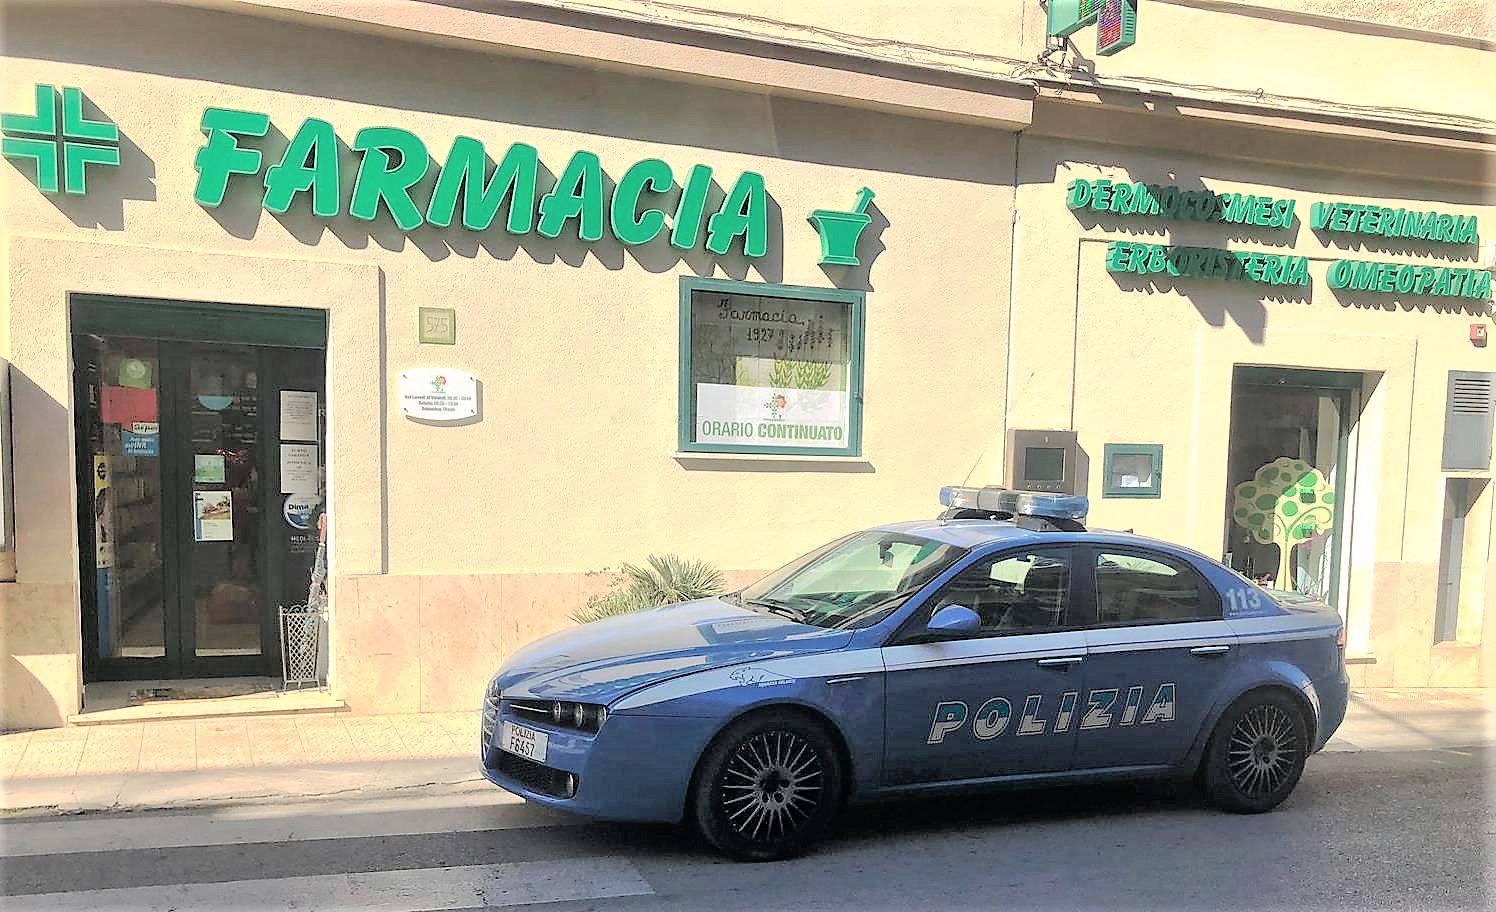 La Polizia di Stato arresta un rapinatore di farmacia e sventa un furto nel centro storico